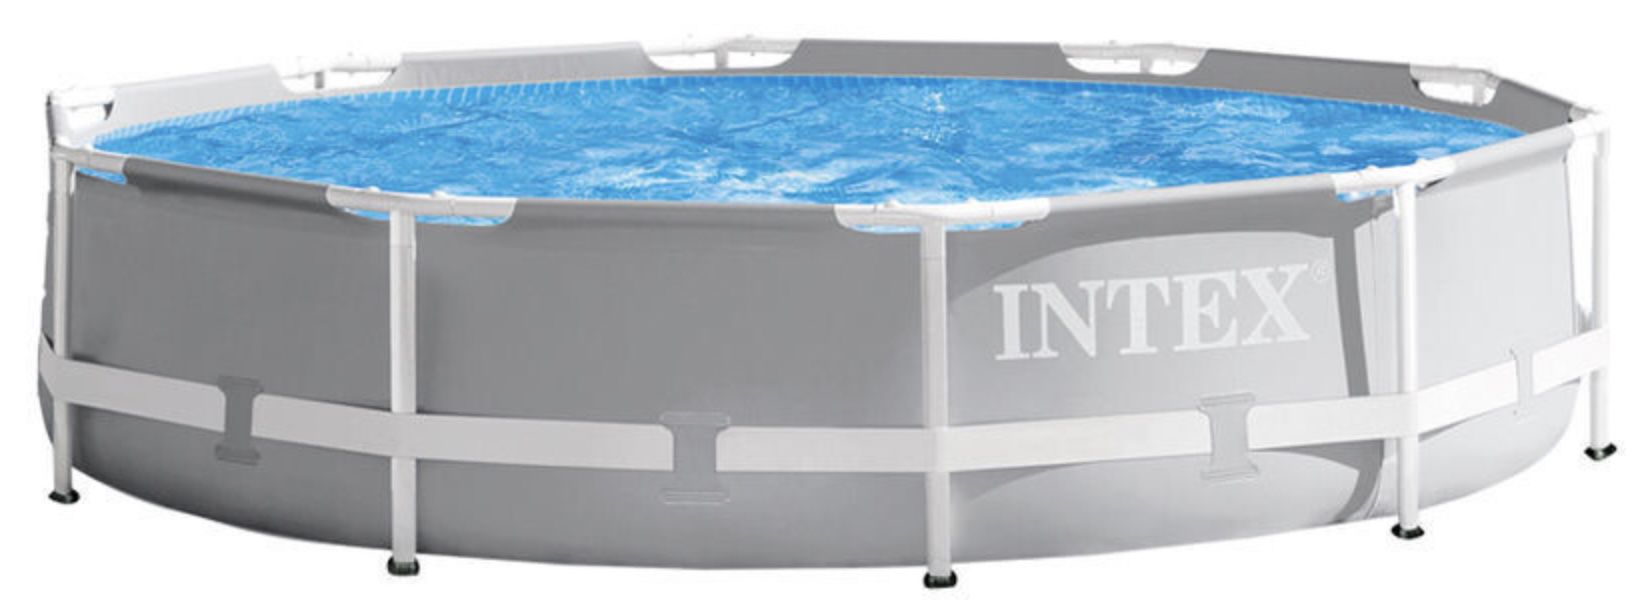 INTEX 26702NP Schwimmbecken Prism Frame Pools 3,05 x 0,76 m mit Filterpumpe für 107,49€ (statt 130€)